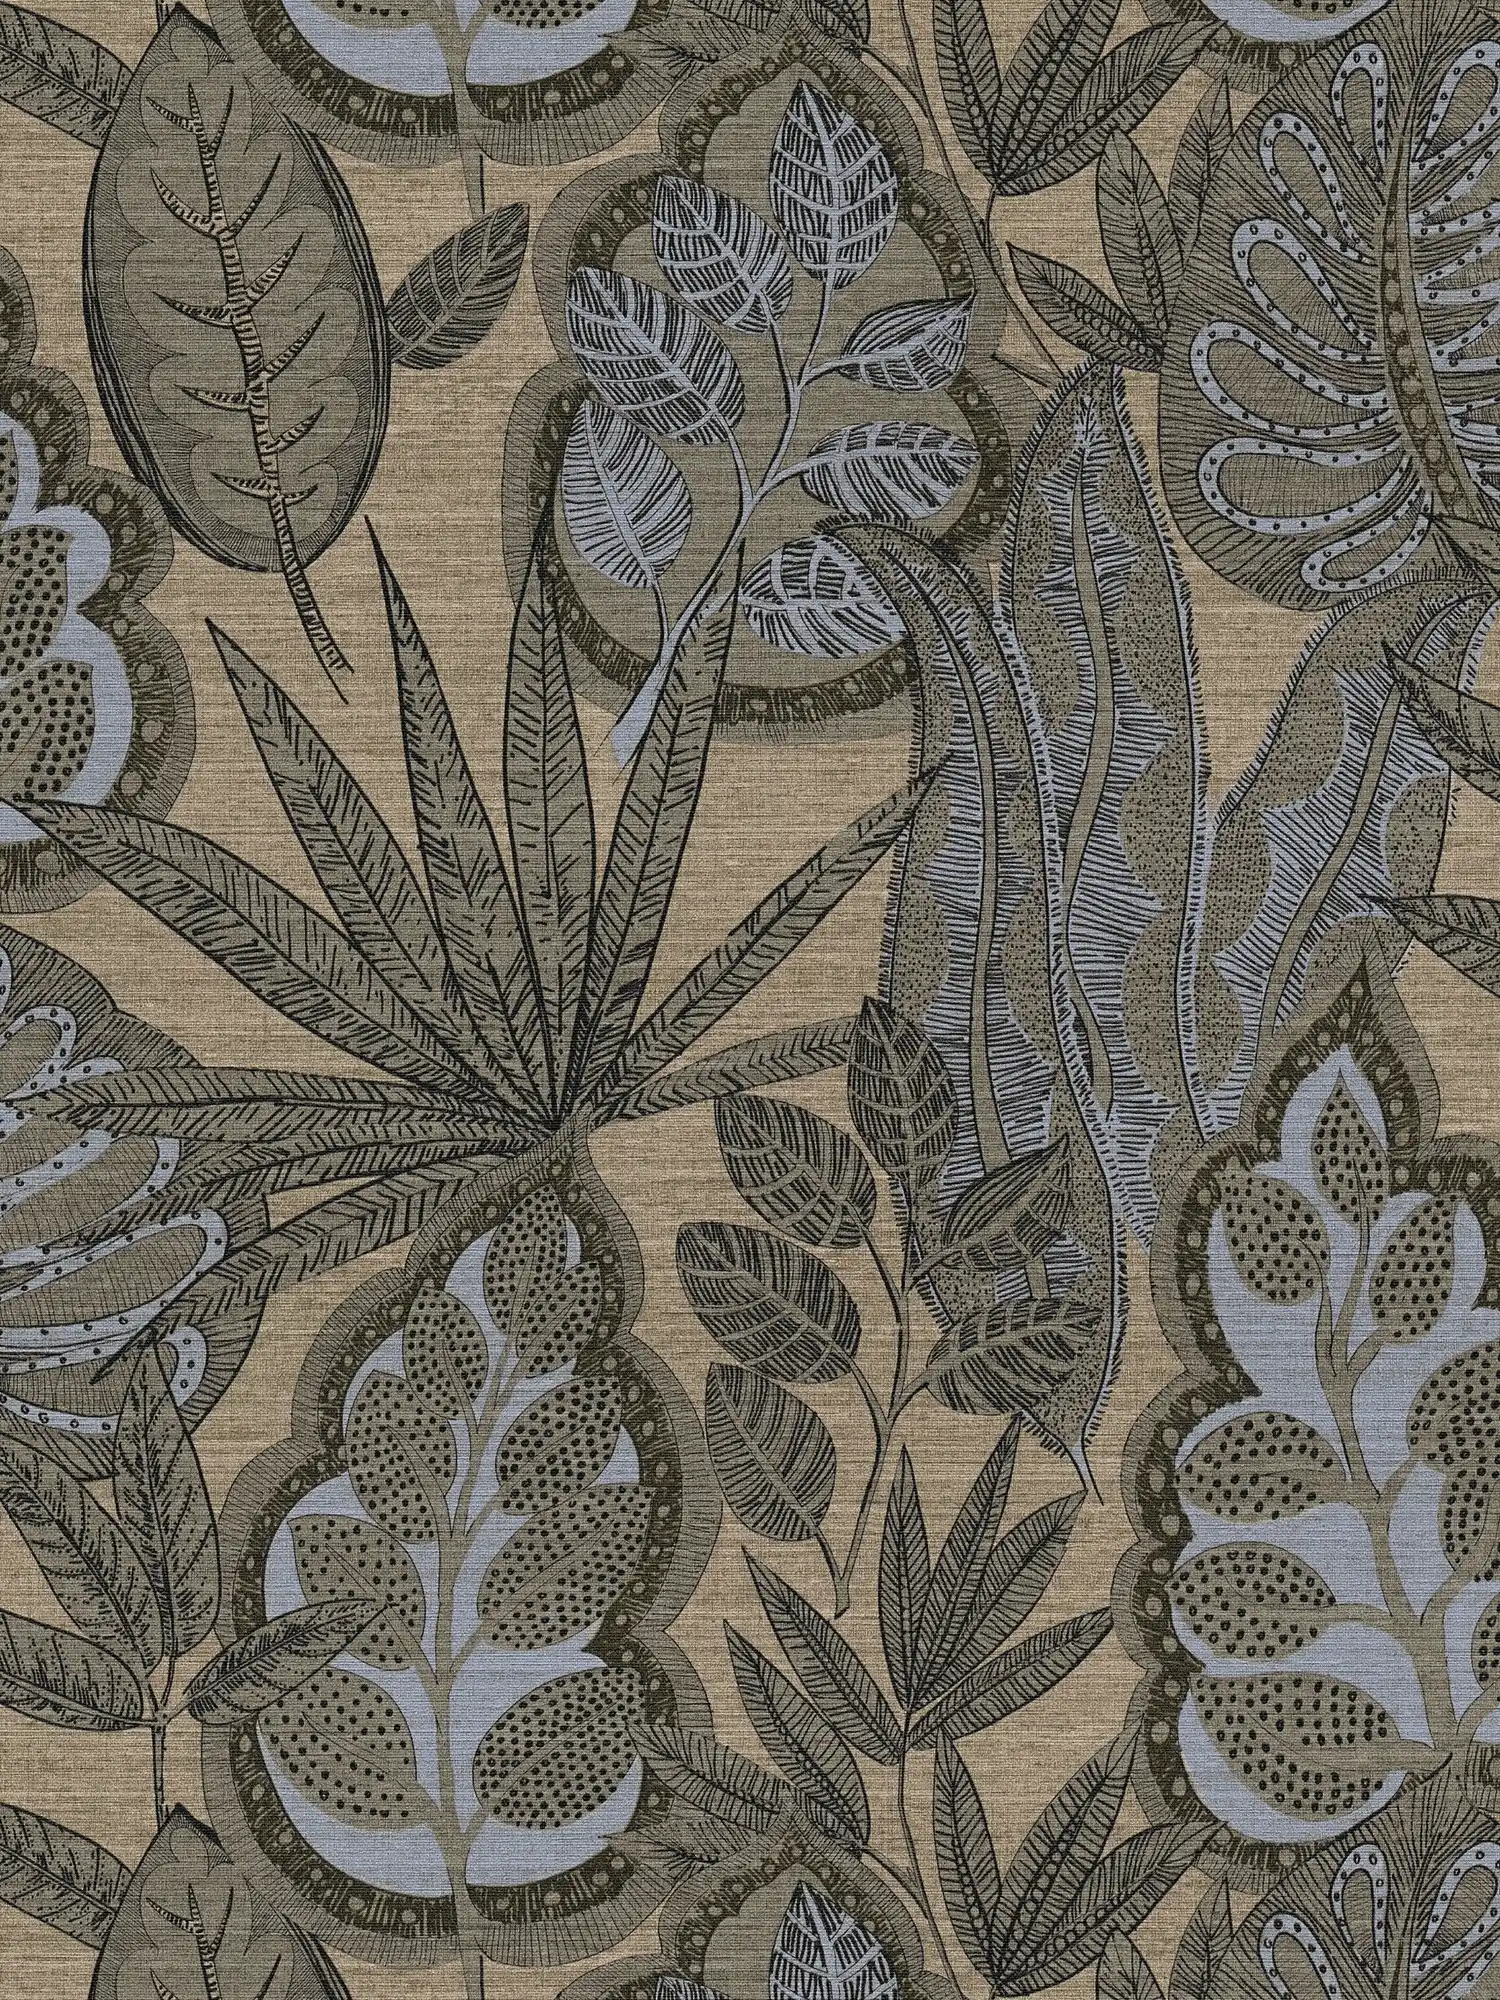         Papel pintado tejido-no tejido de diseño gráfico floral con estructura ligera, mate - gris, beige, marrón
    